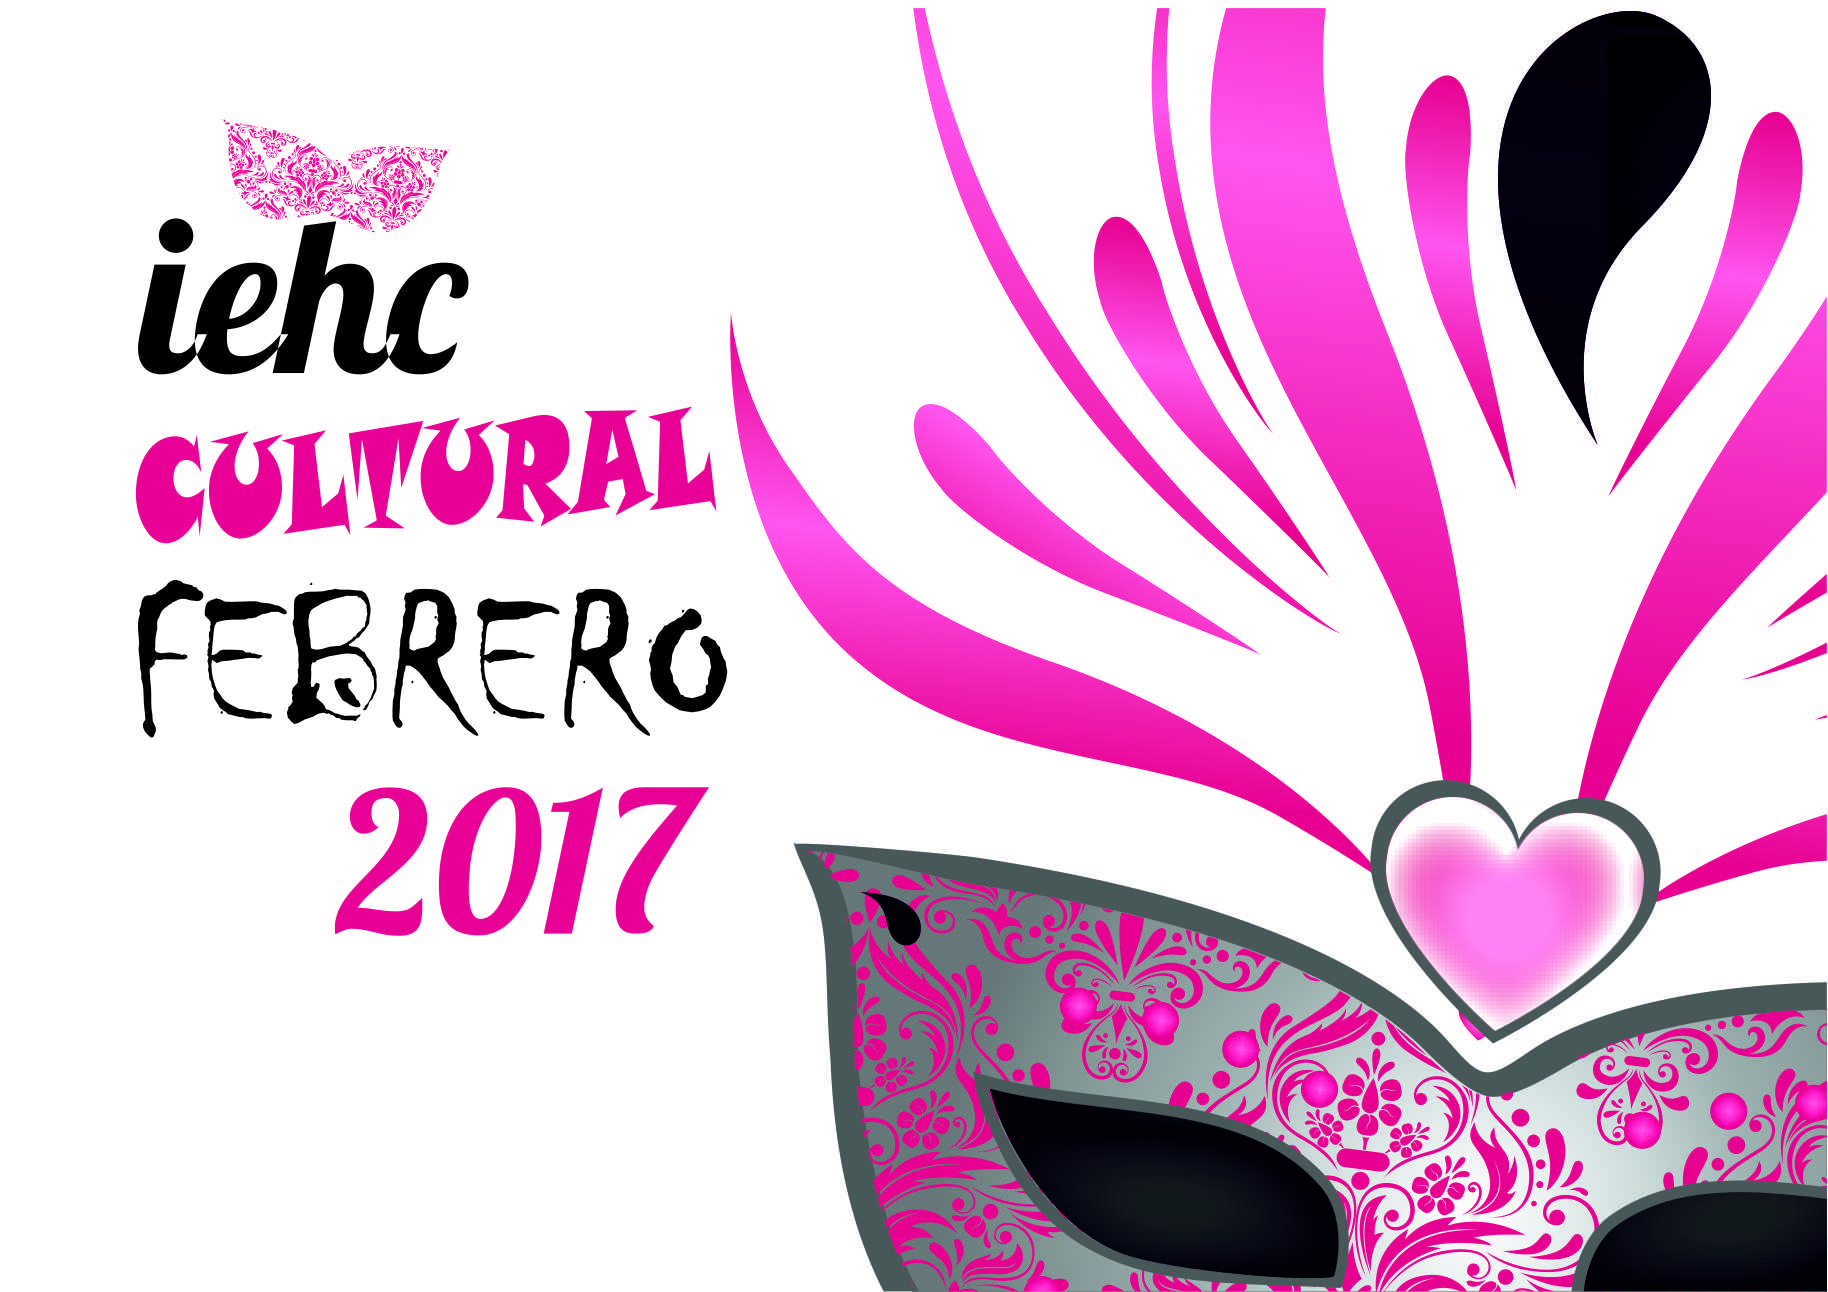 IEHC cultural febrero 2017